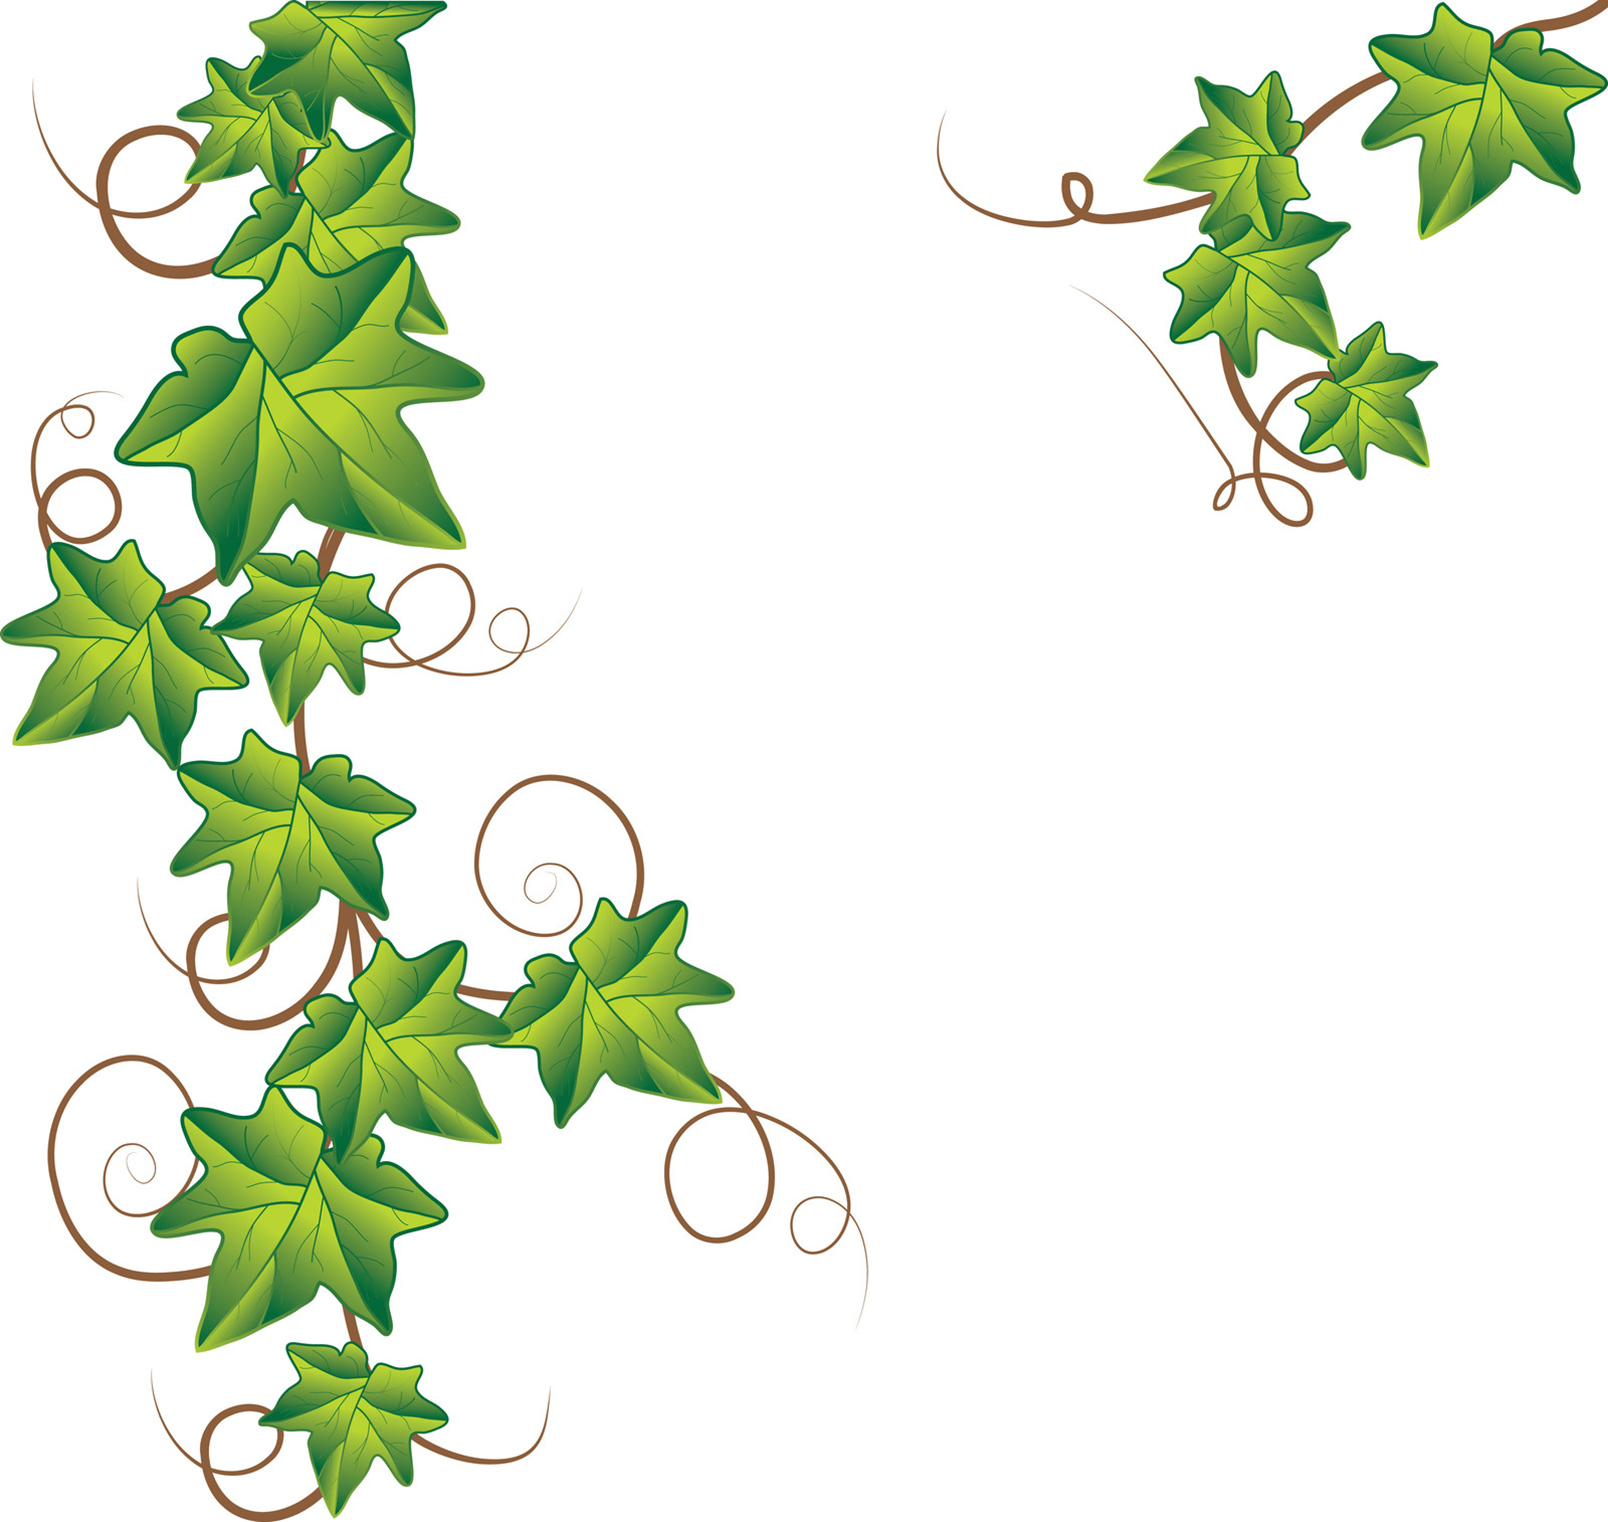 Ivy Leaf Border Clip Art